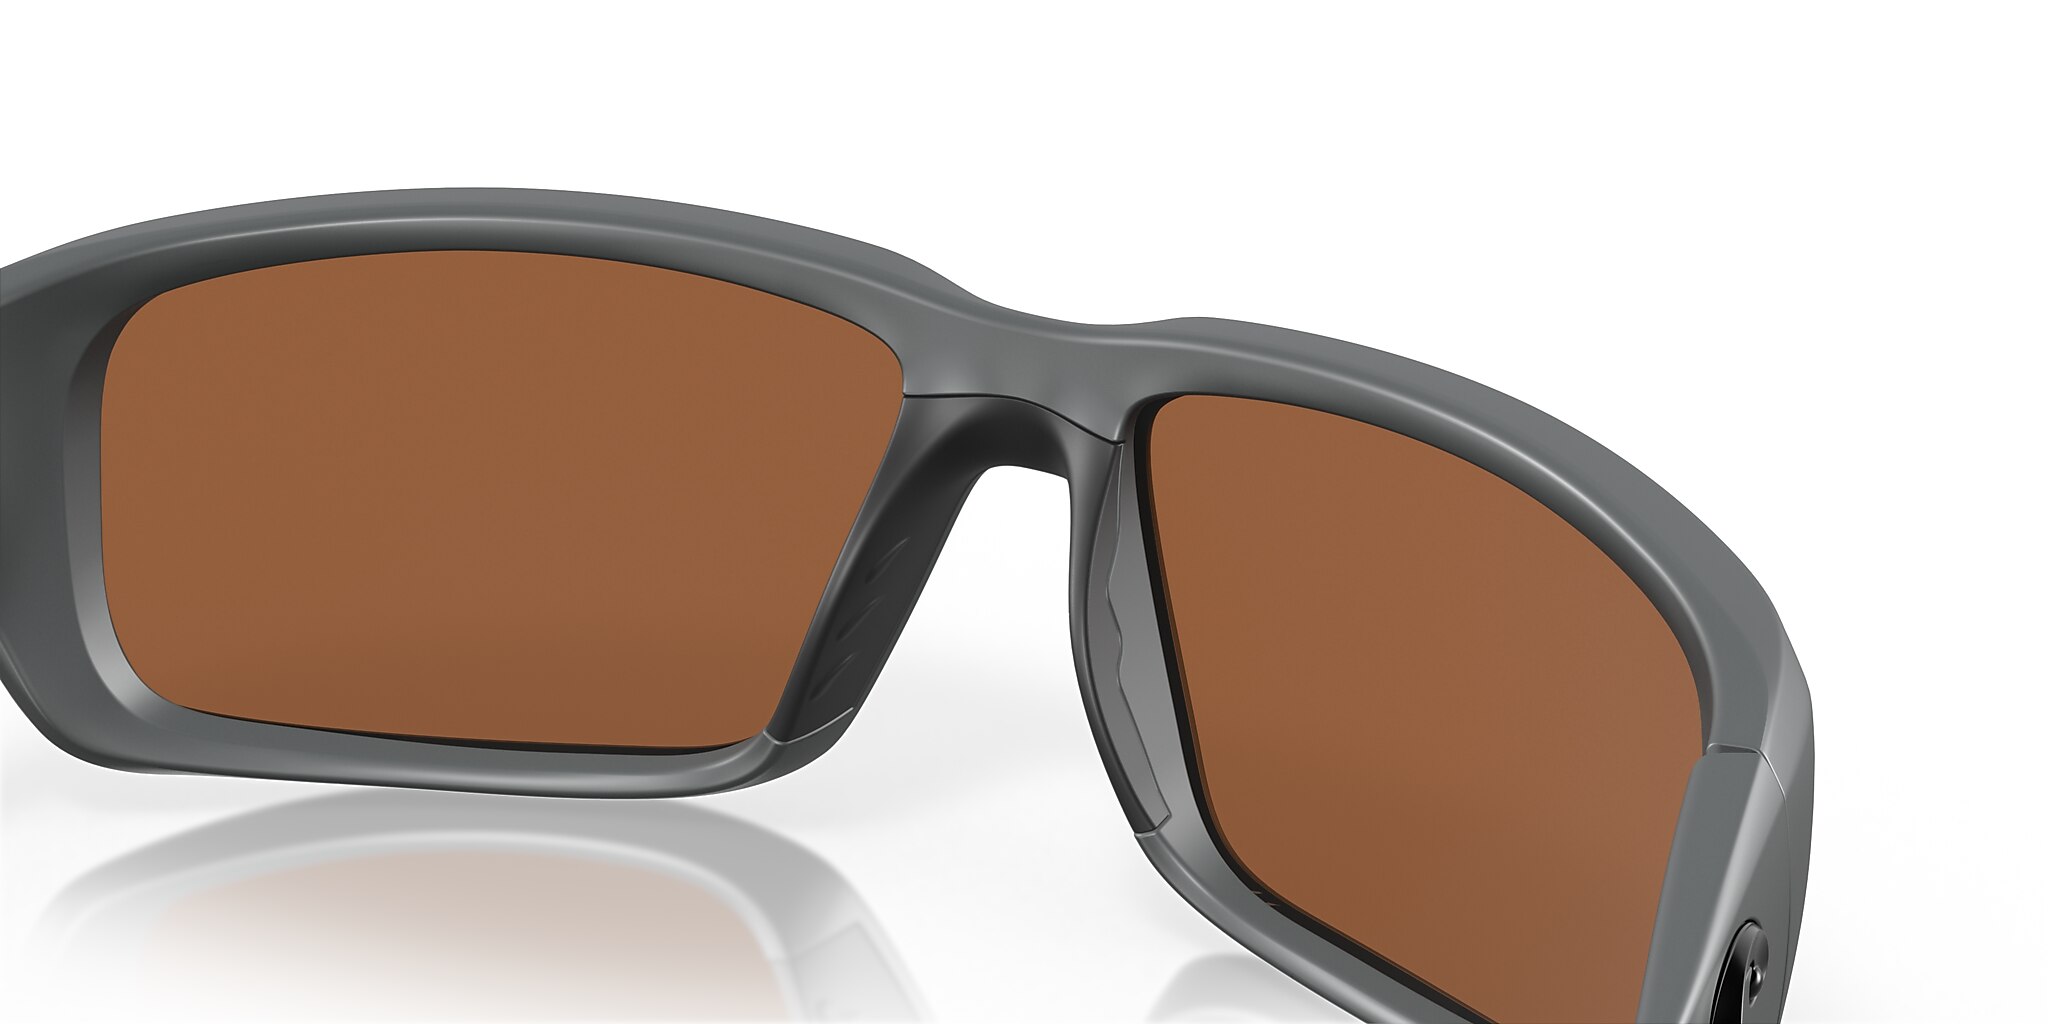 Fantail Polarized Sunglasses in Copper Silver Mirror | Costa Del Mar®